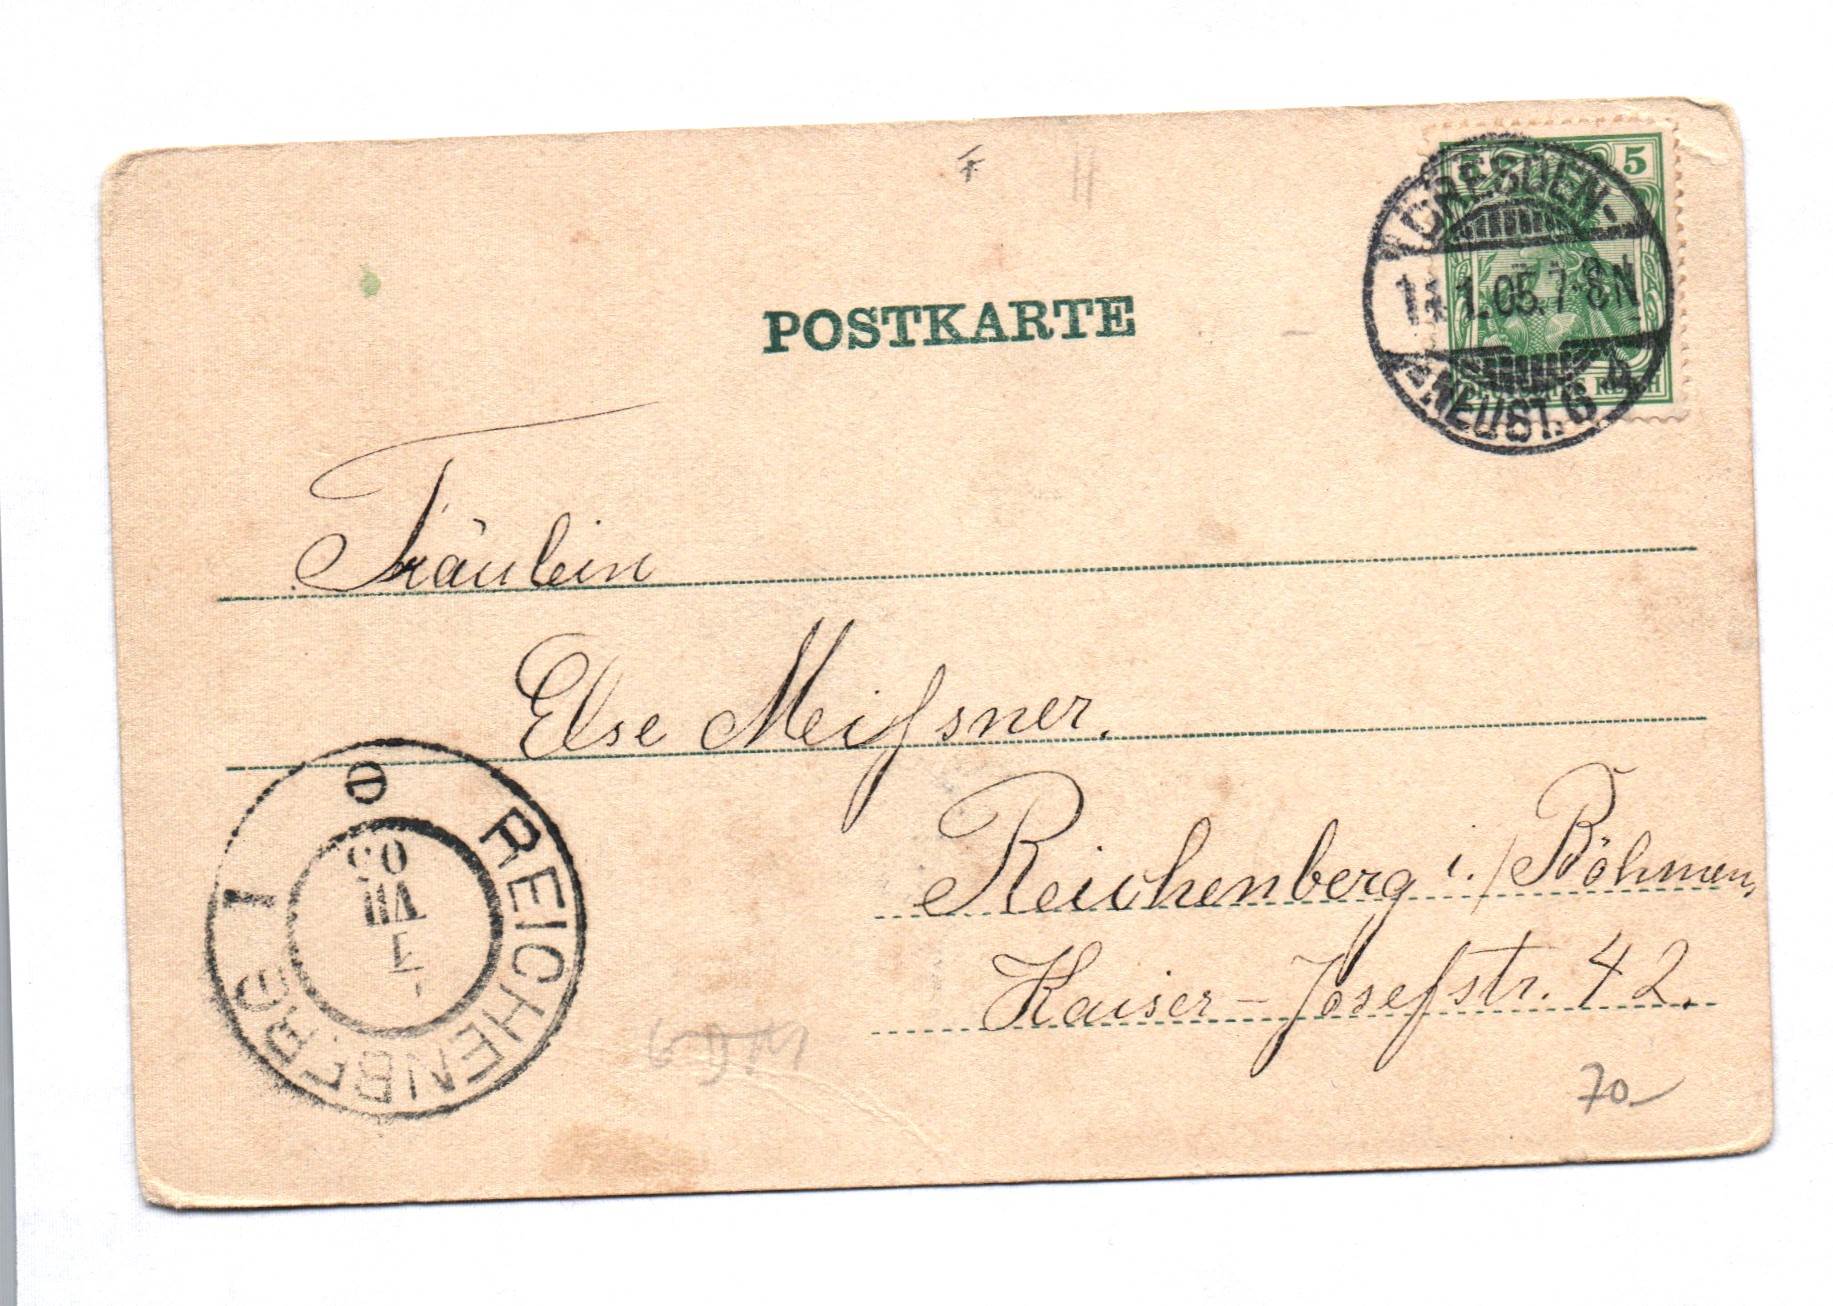 Ak Dresden Blick von der Terasse Postkarte 1905